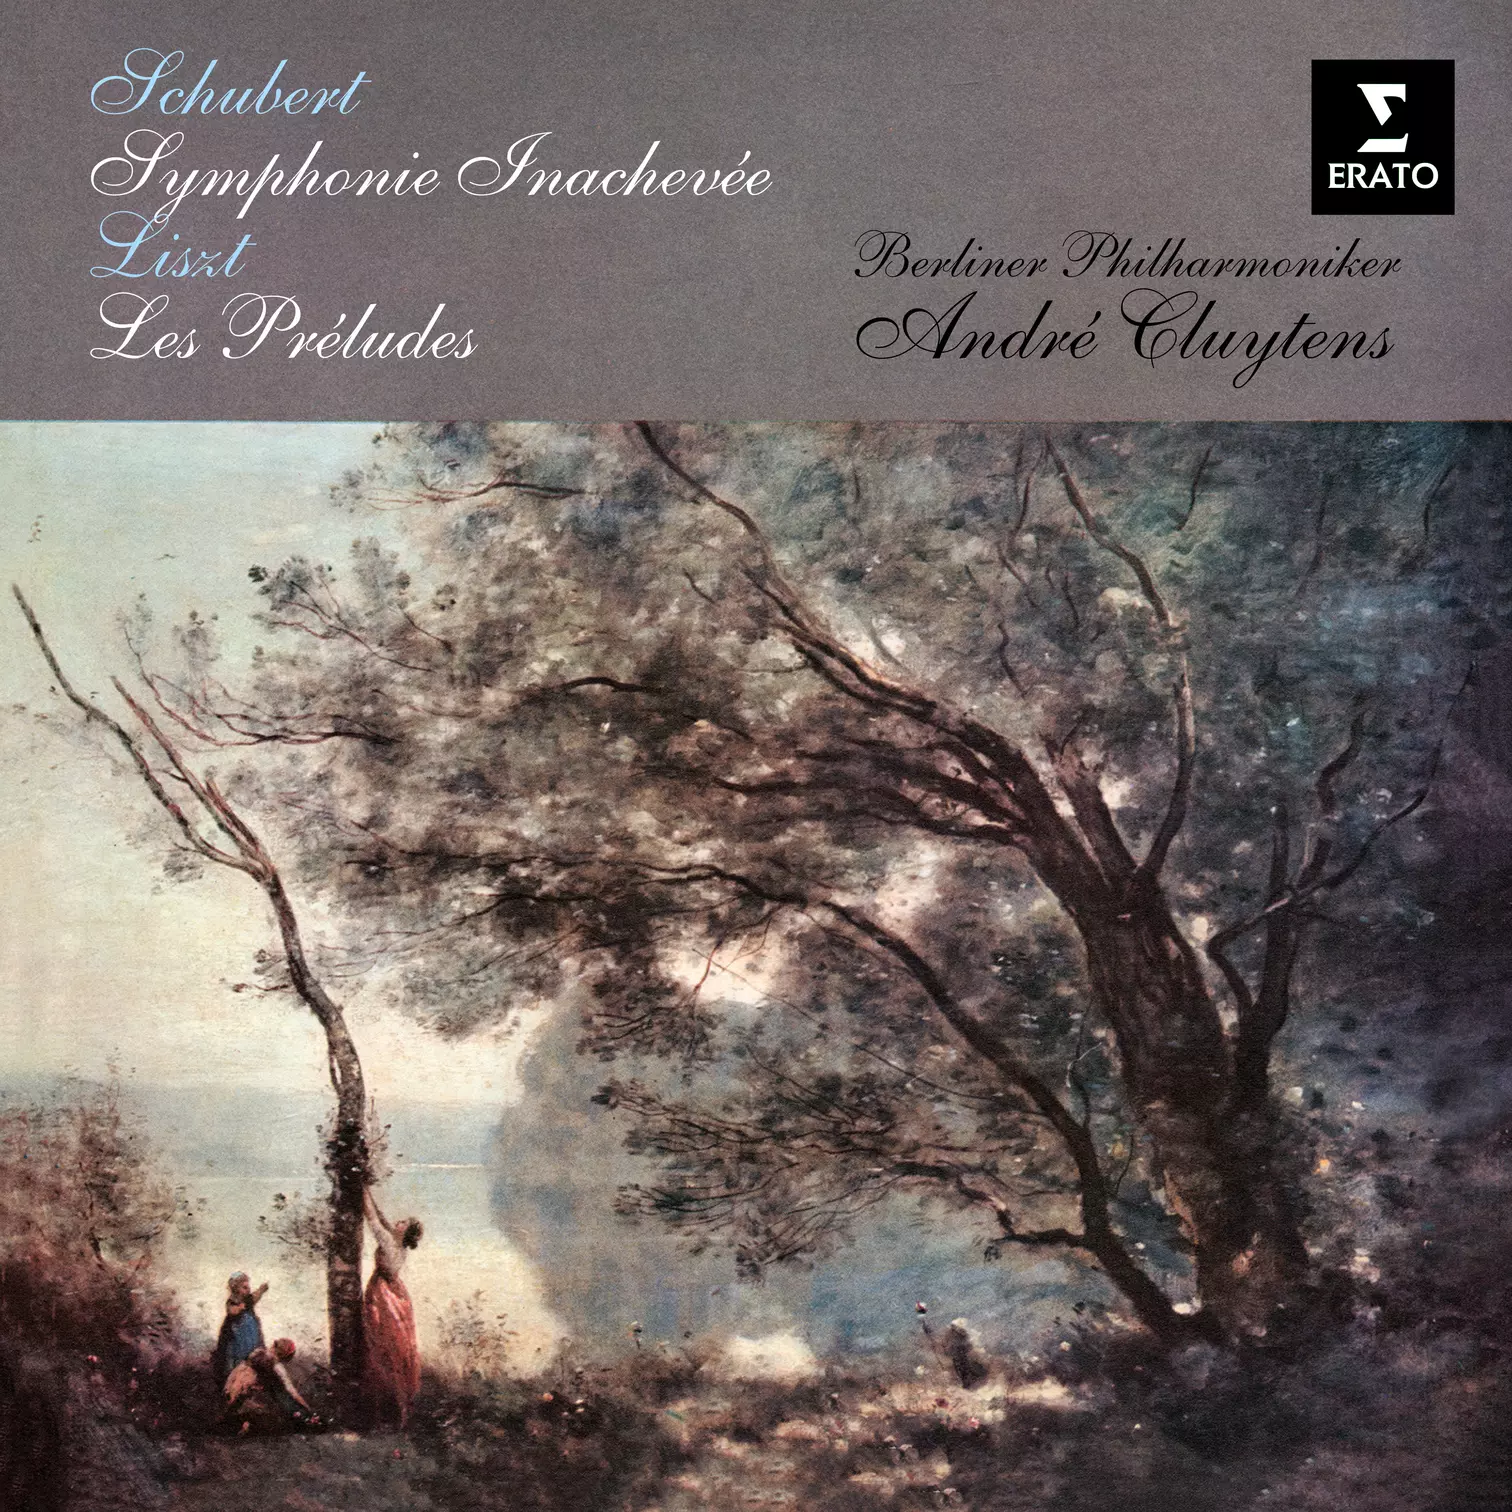 Schubert: Symphonie No. 8 “Inachevée” - Liszt: Les préludes